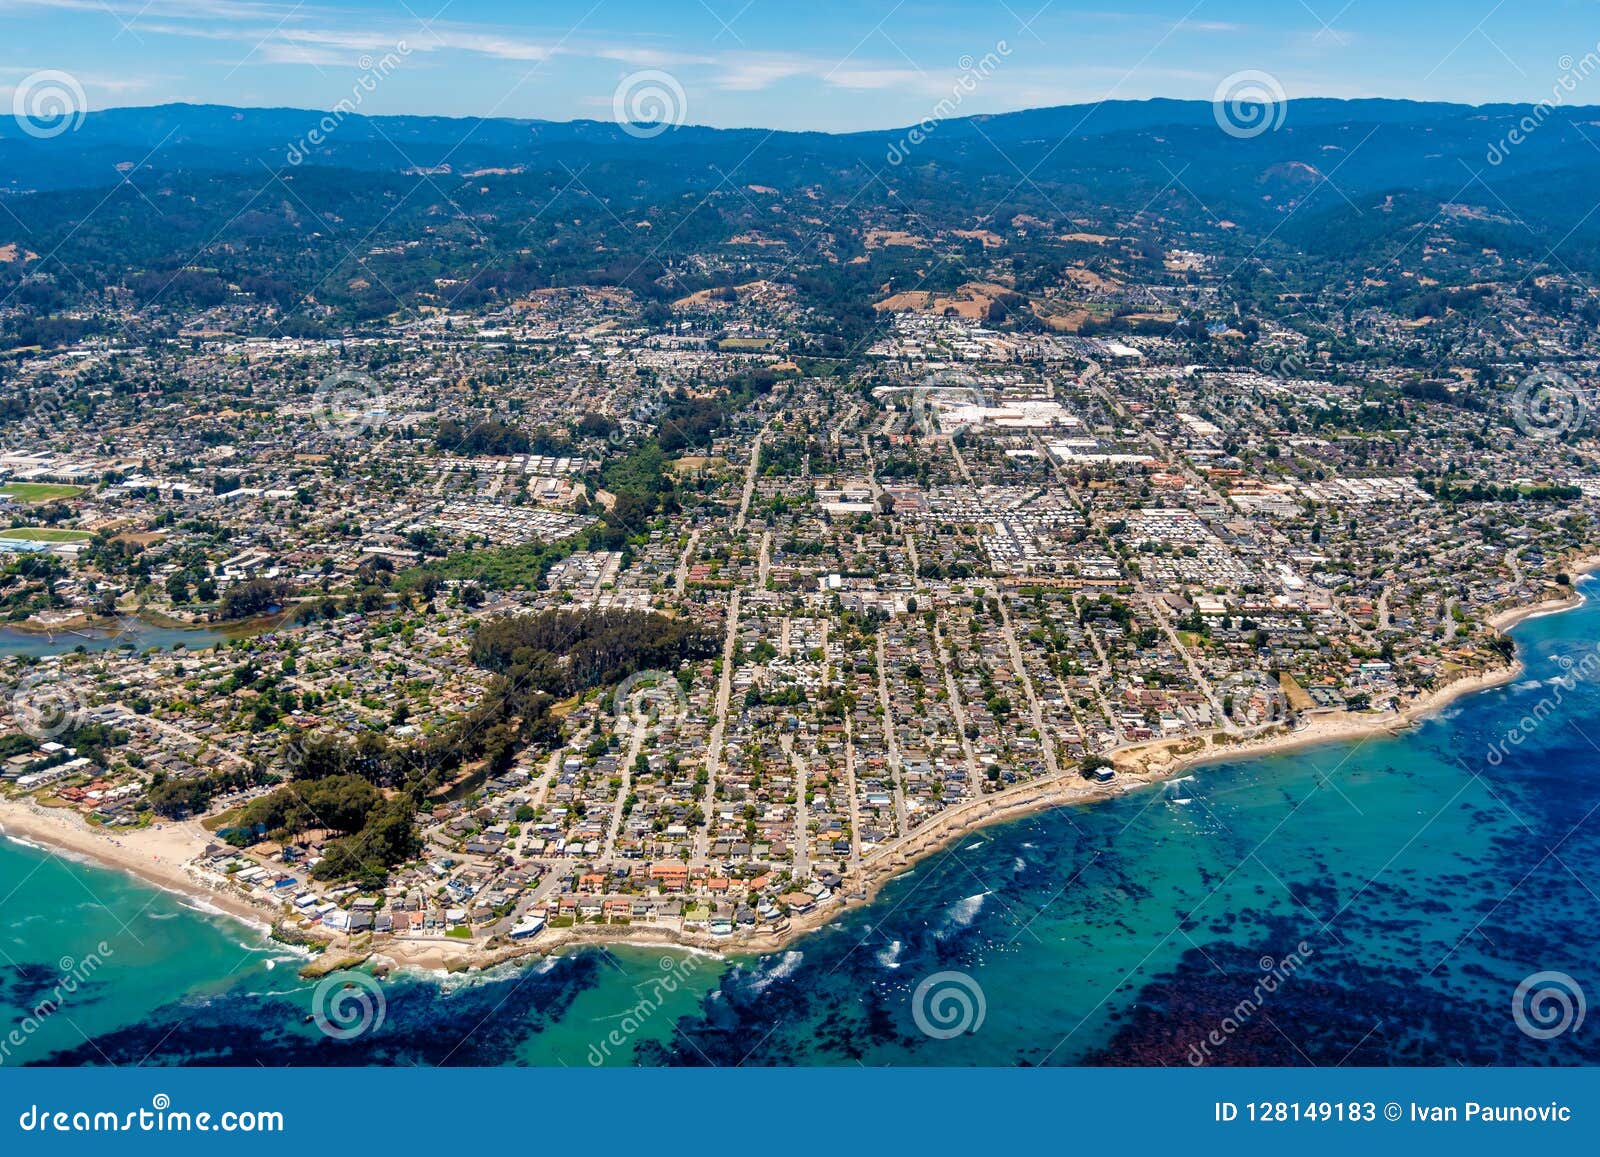 santa cruz california aerial view